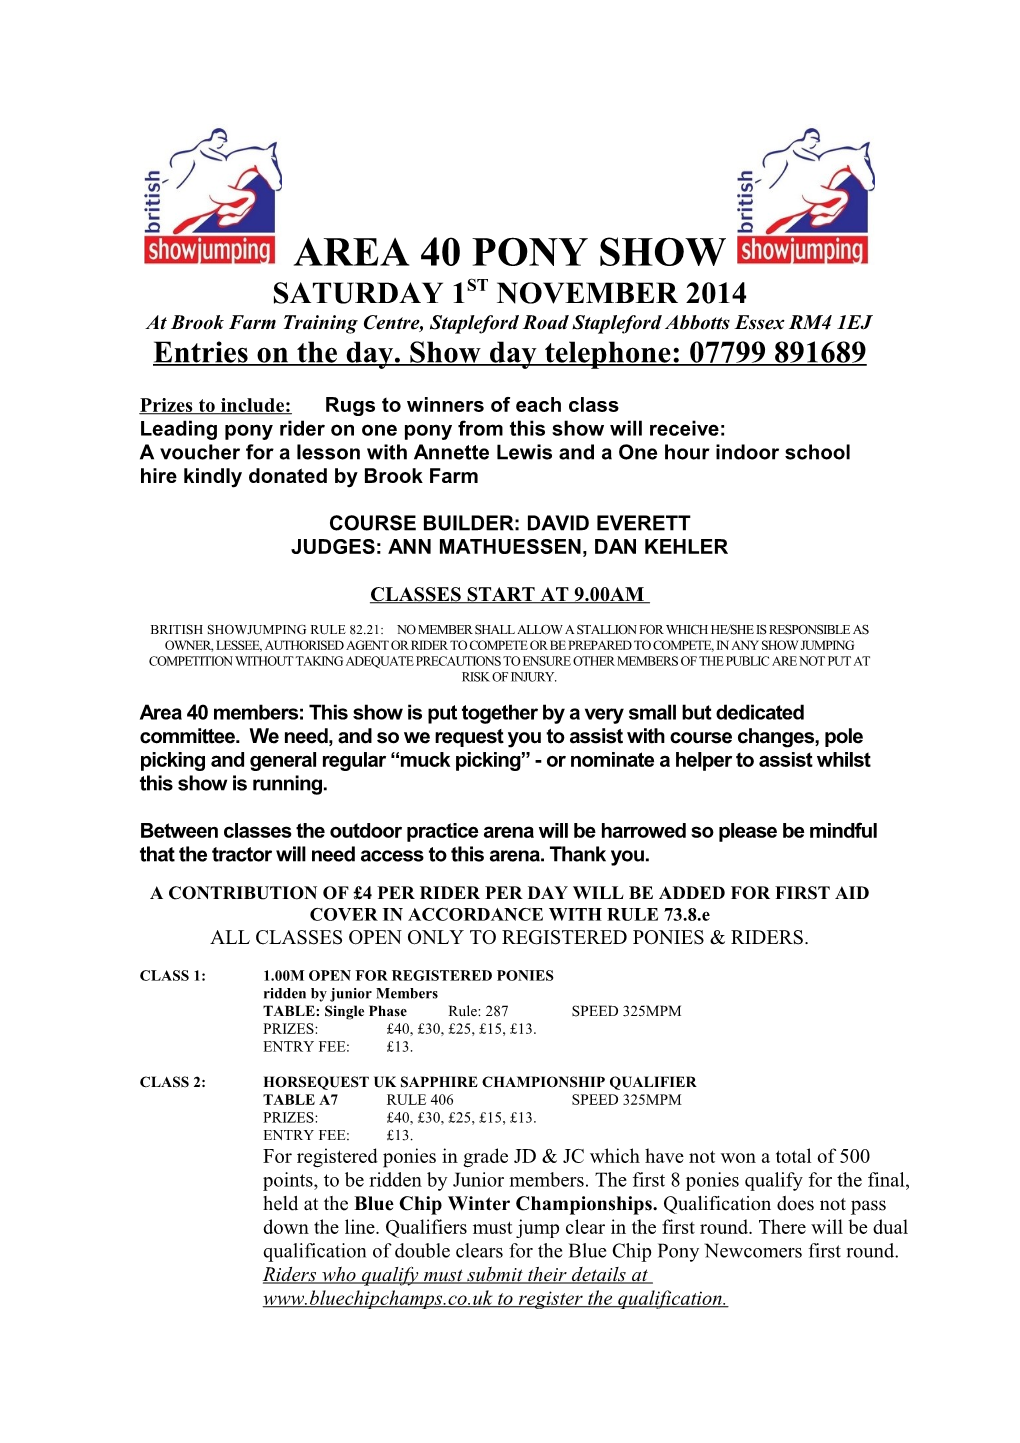 Area 40 Pony Show